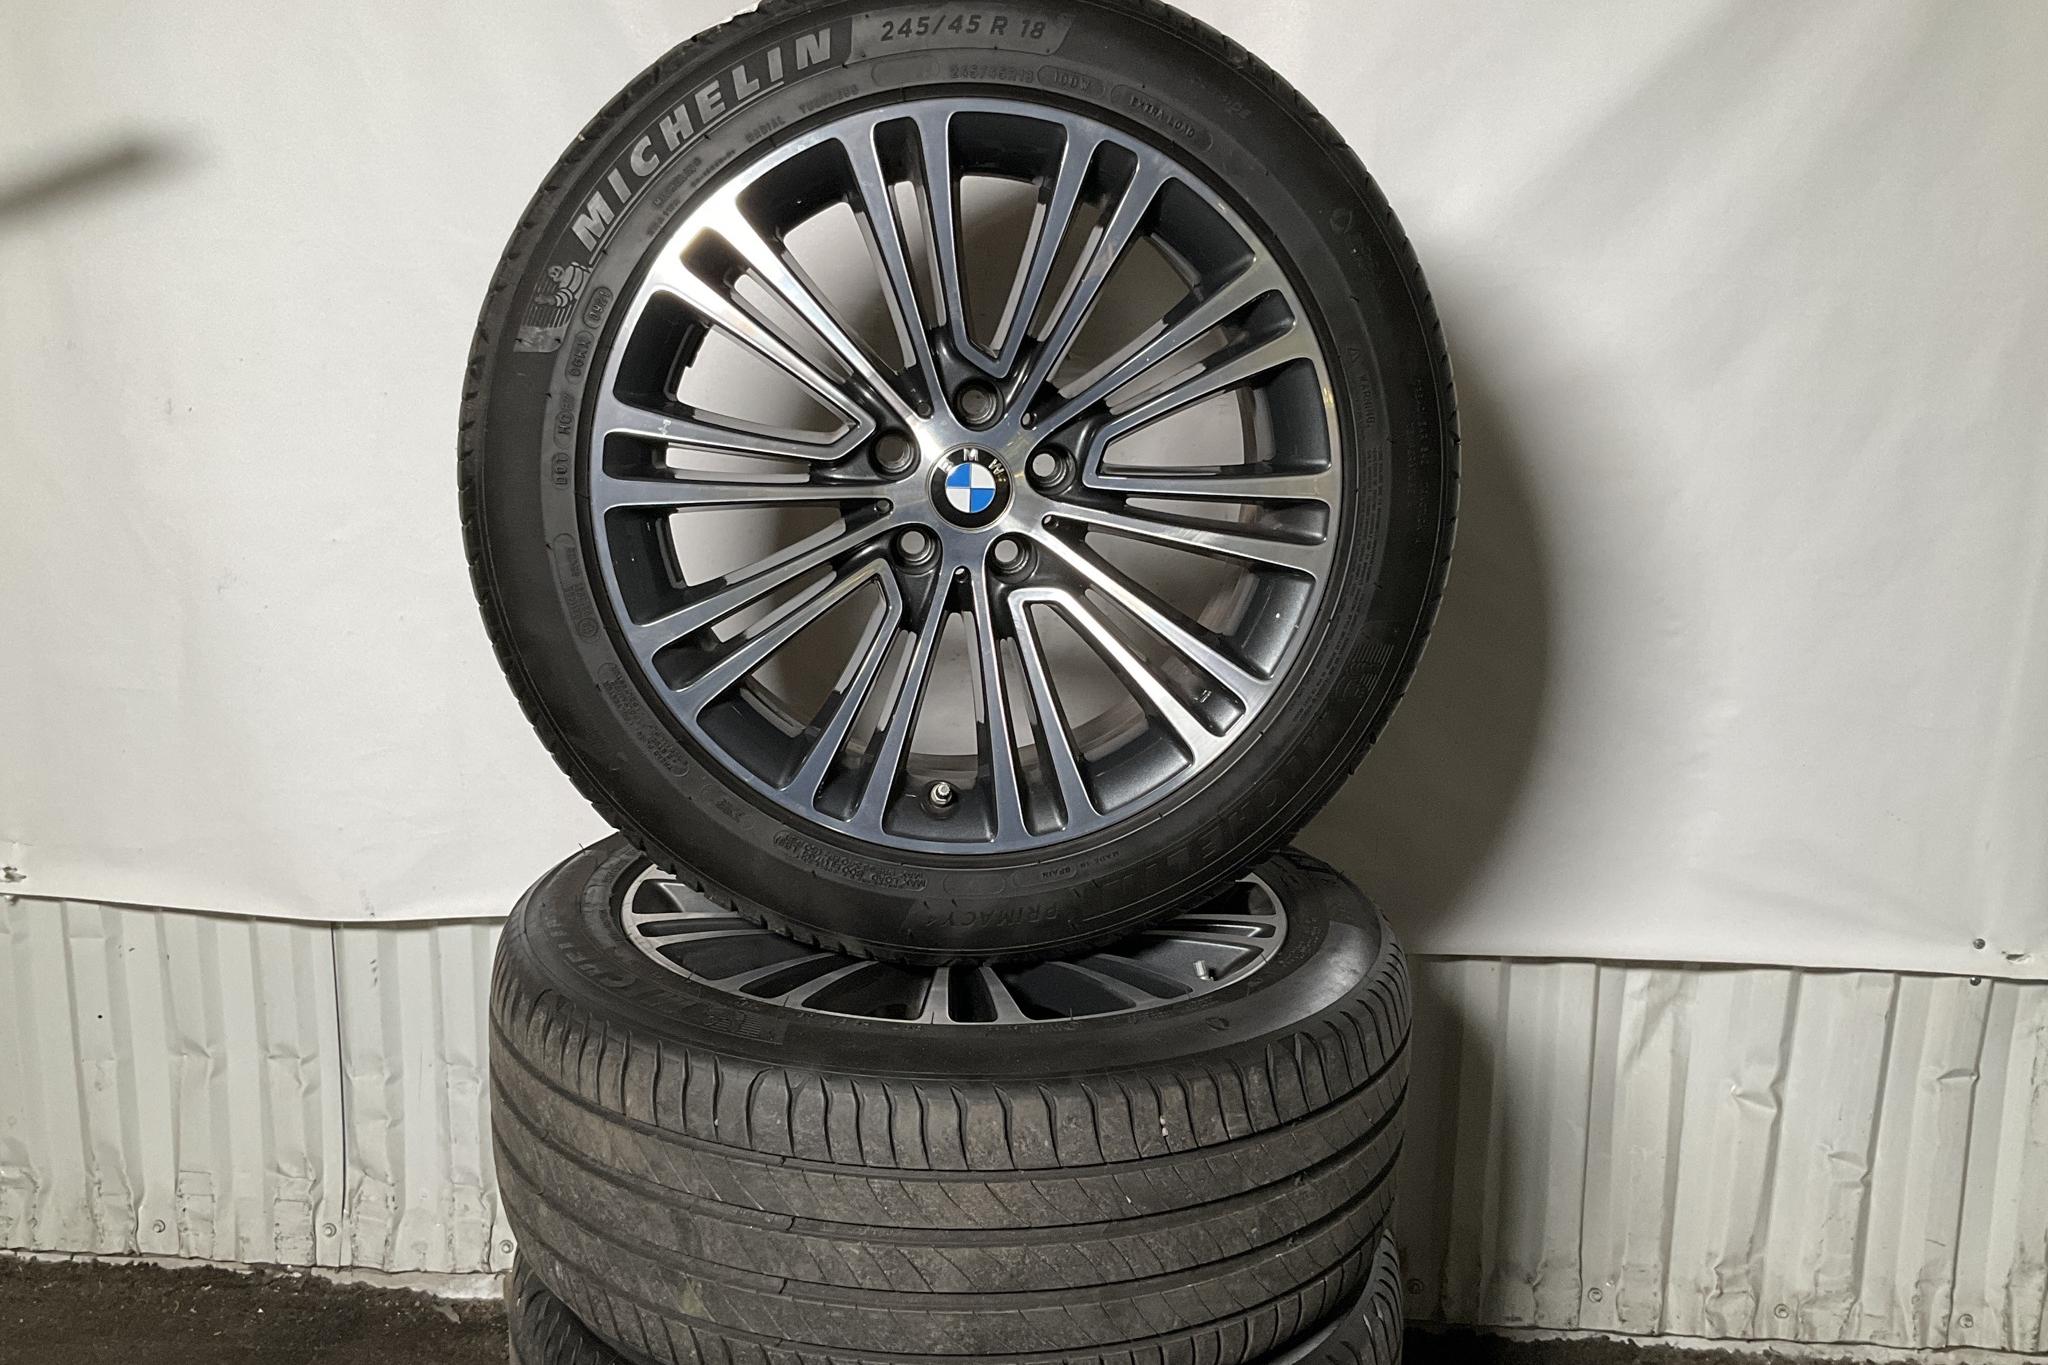 BMW 520d xDrive Touring, G31 (190hk) - 115 240 km - Automatic - black - 2019